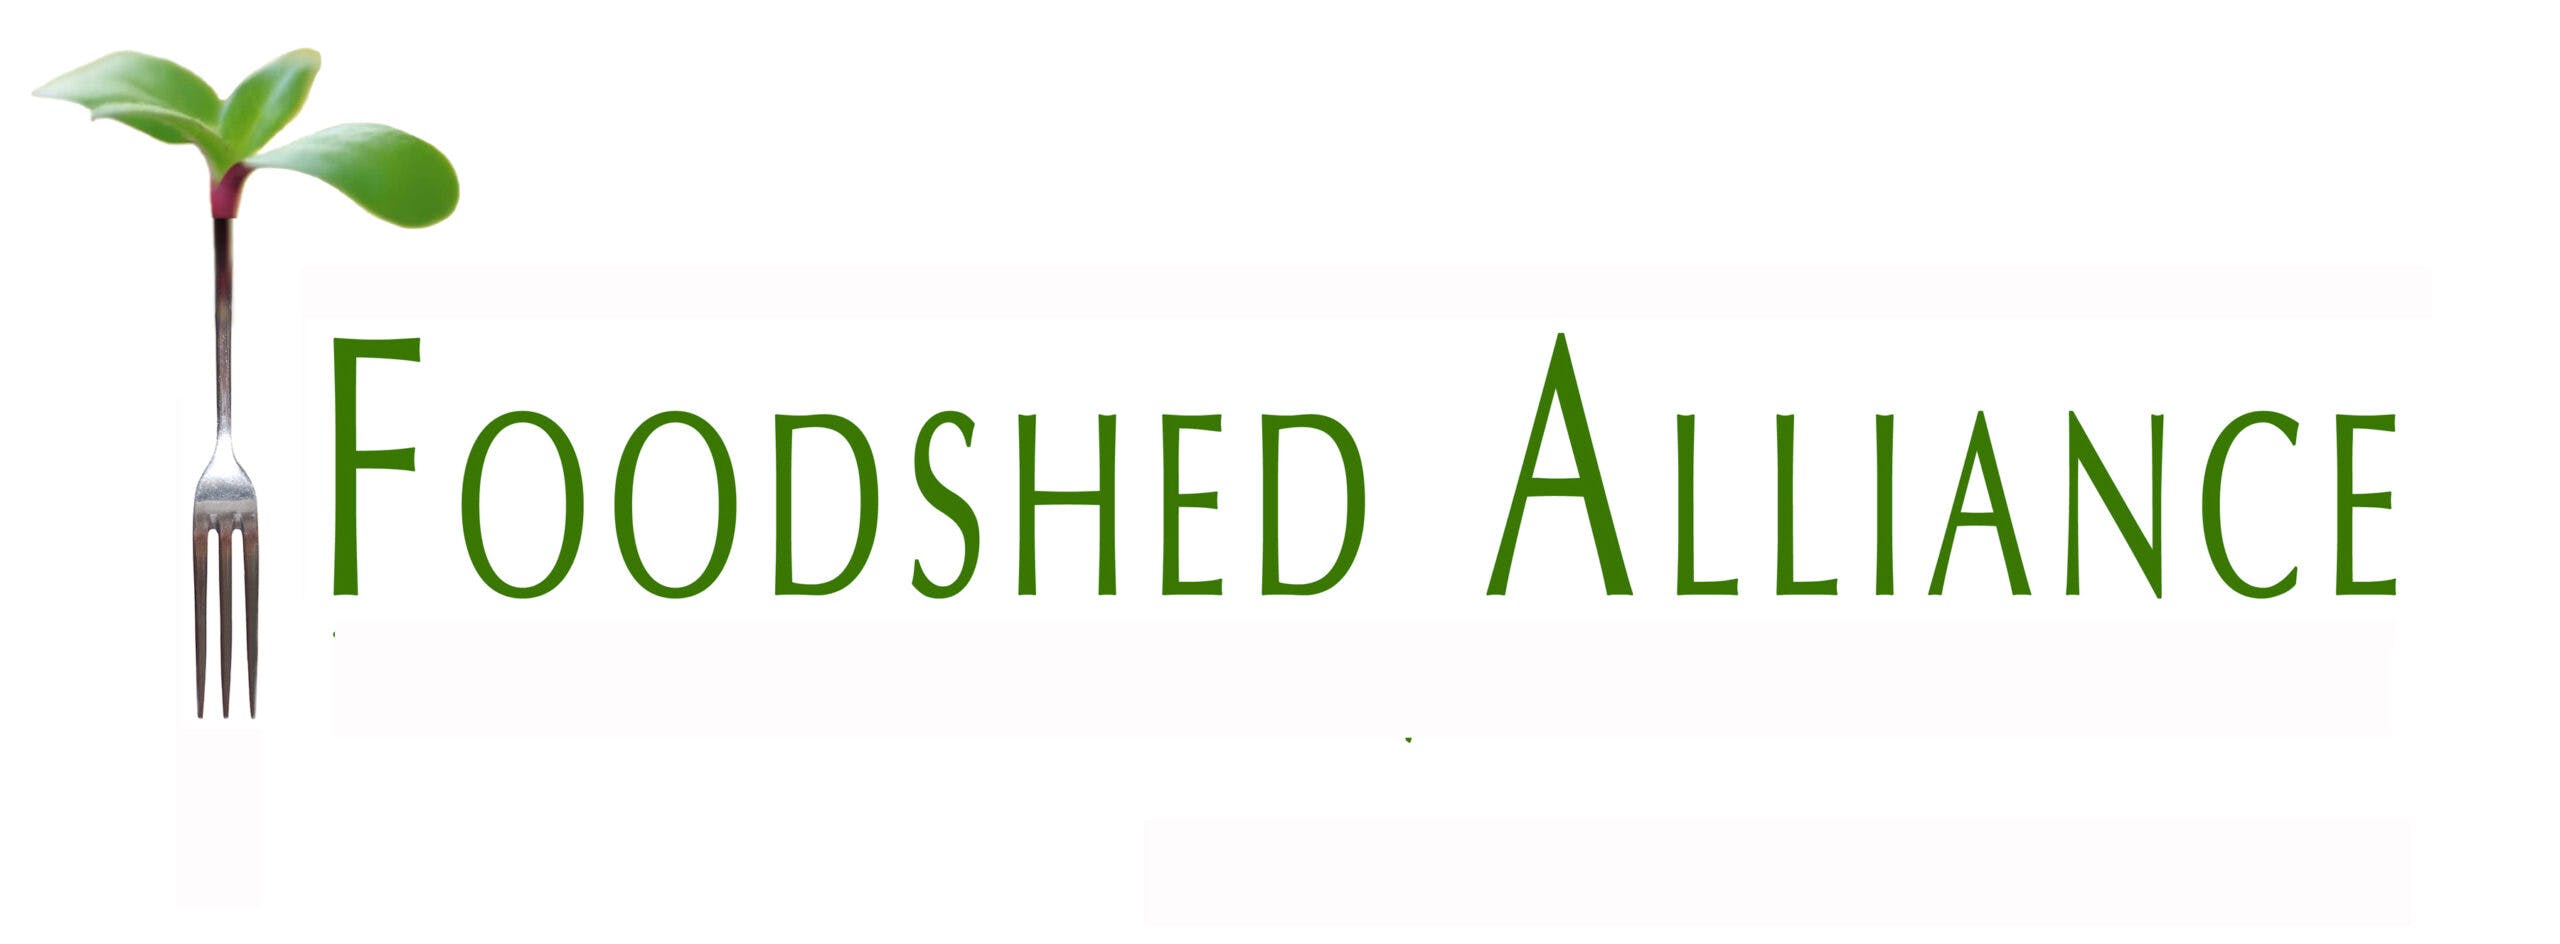 Foodshed_Alliance_logo-WEB